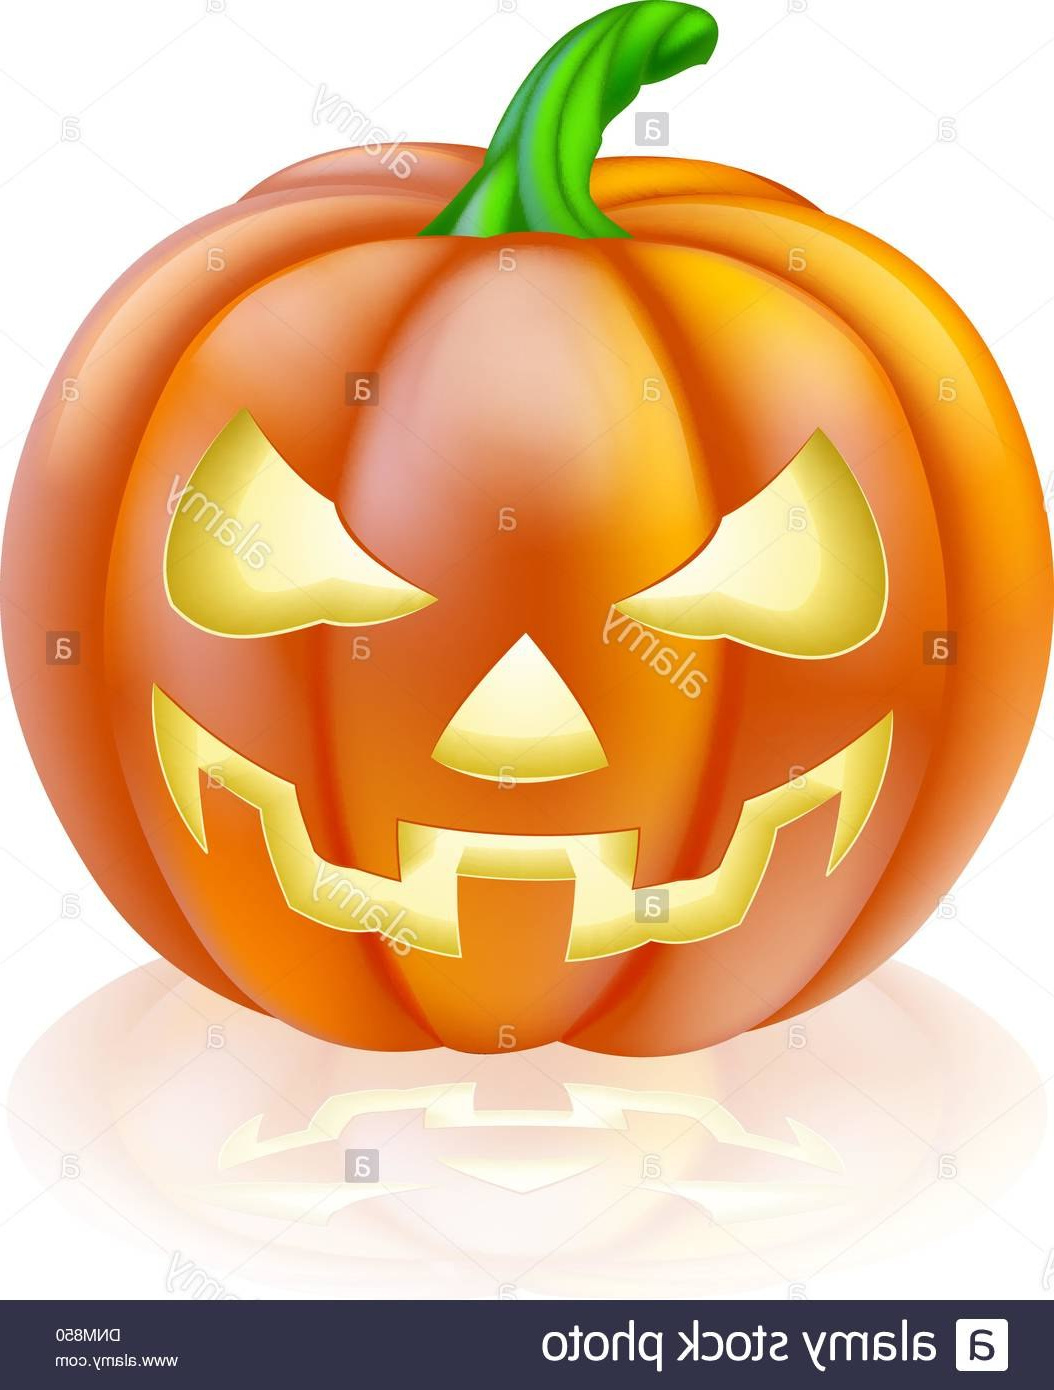 Dessin Citrouille D&amp;#039;halloween Impressionnant Images Ment Dessiner Une Citrouille D Halloween En Ligne